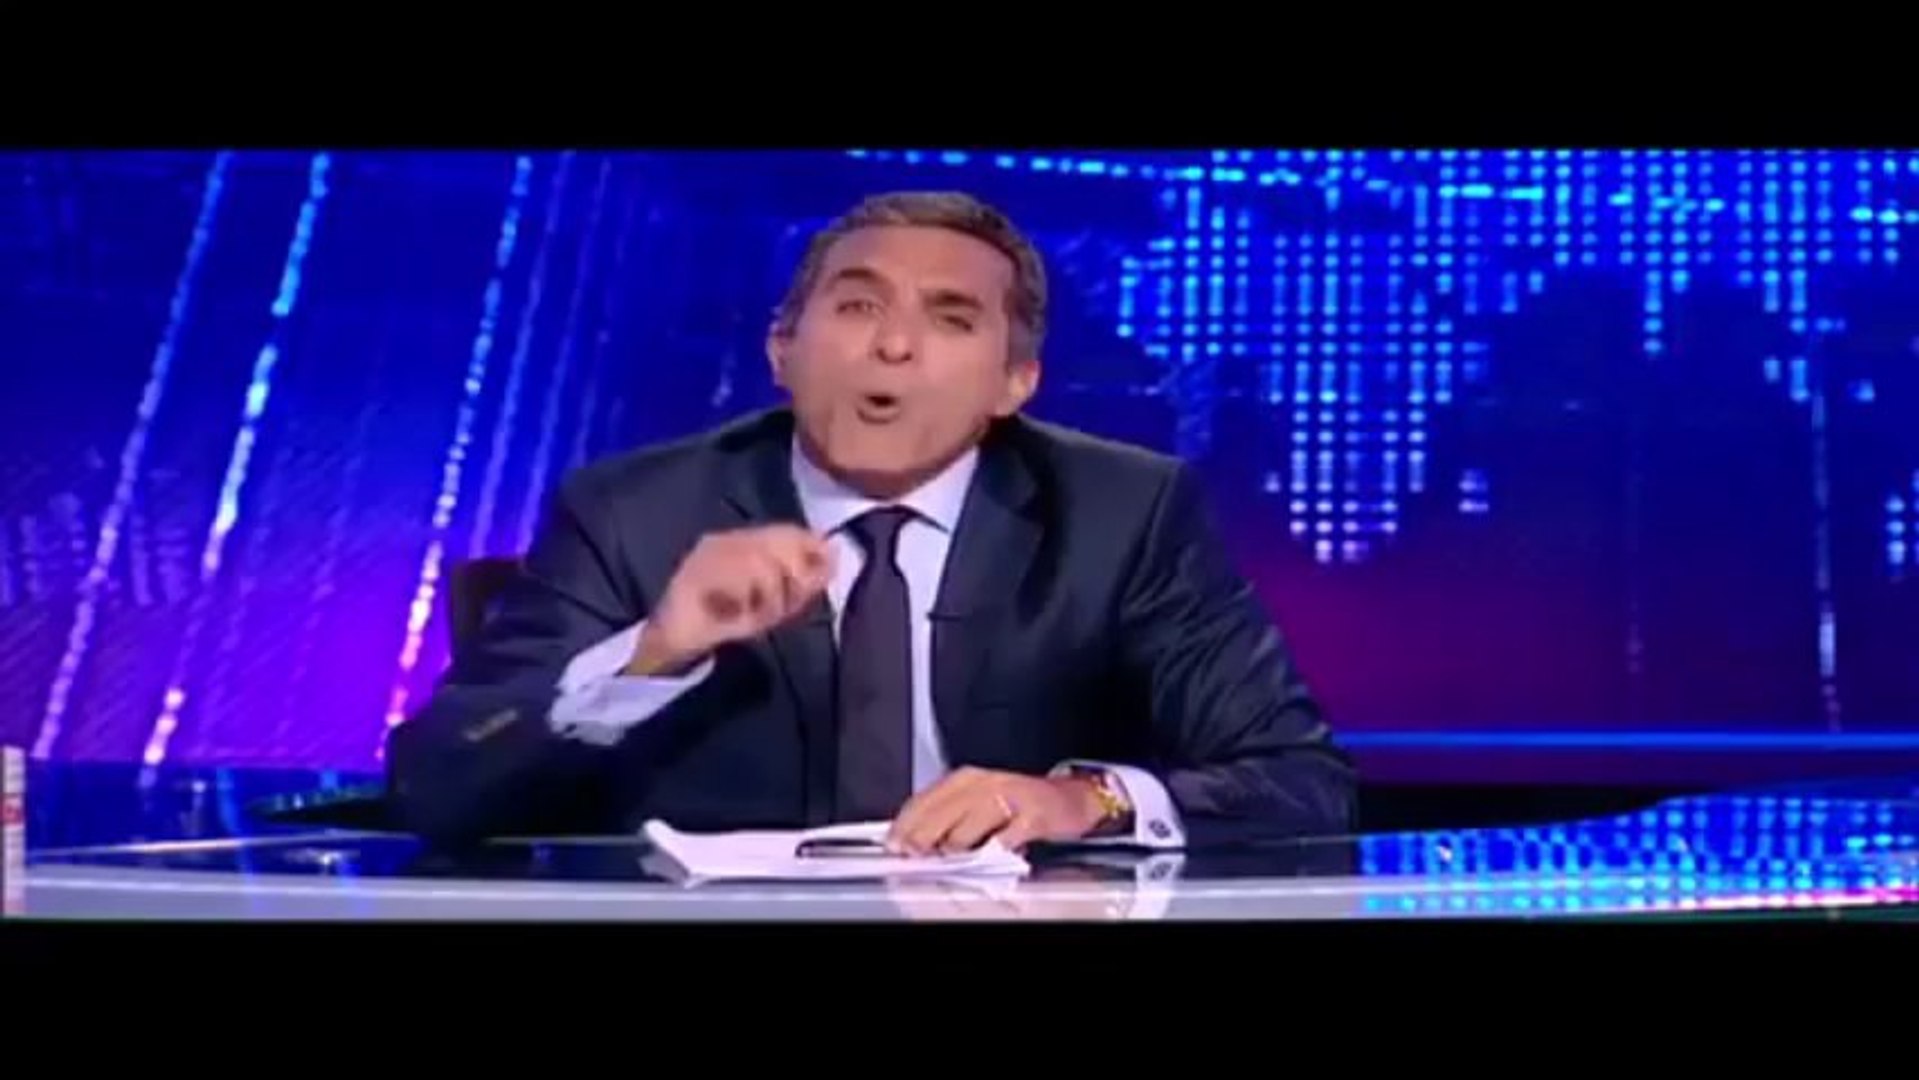 حلقة باسم يوسف الممنوعة من العرض مدة الحلقة 47 دقيقة - video Dailymotion